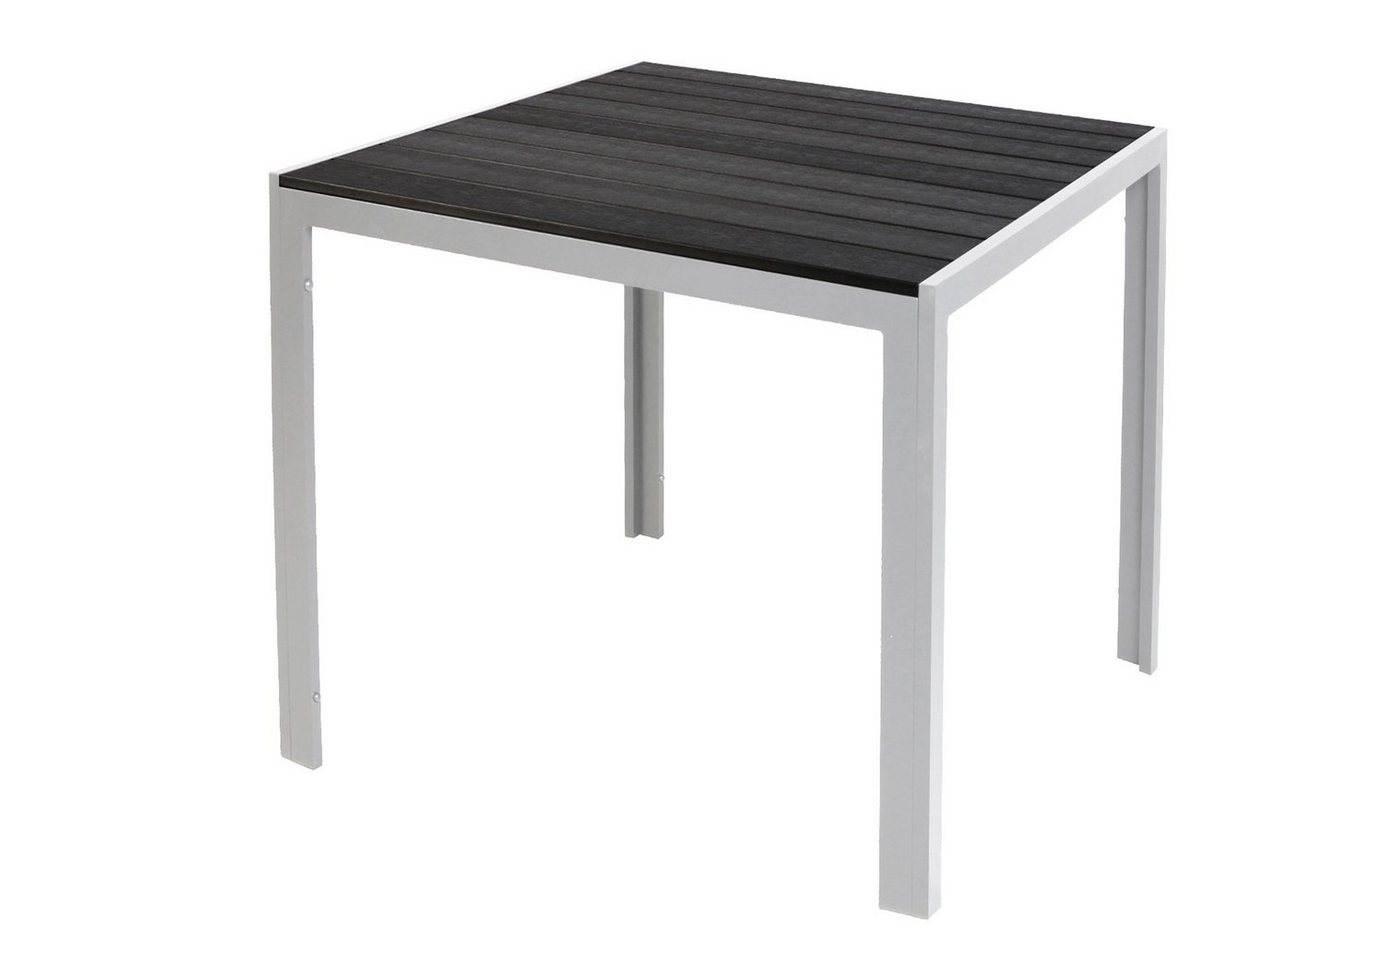 INDA-Exclusiv Küchentisch Schöner Non-Wood Gartentisch Aluminium Silber / Schwarz 90x90cm von INDA-Exclusiv